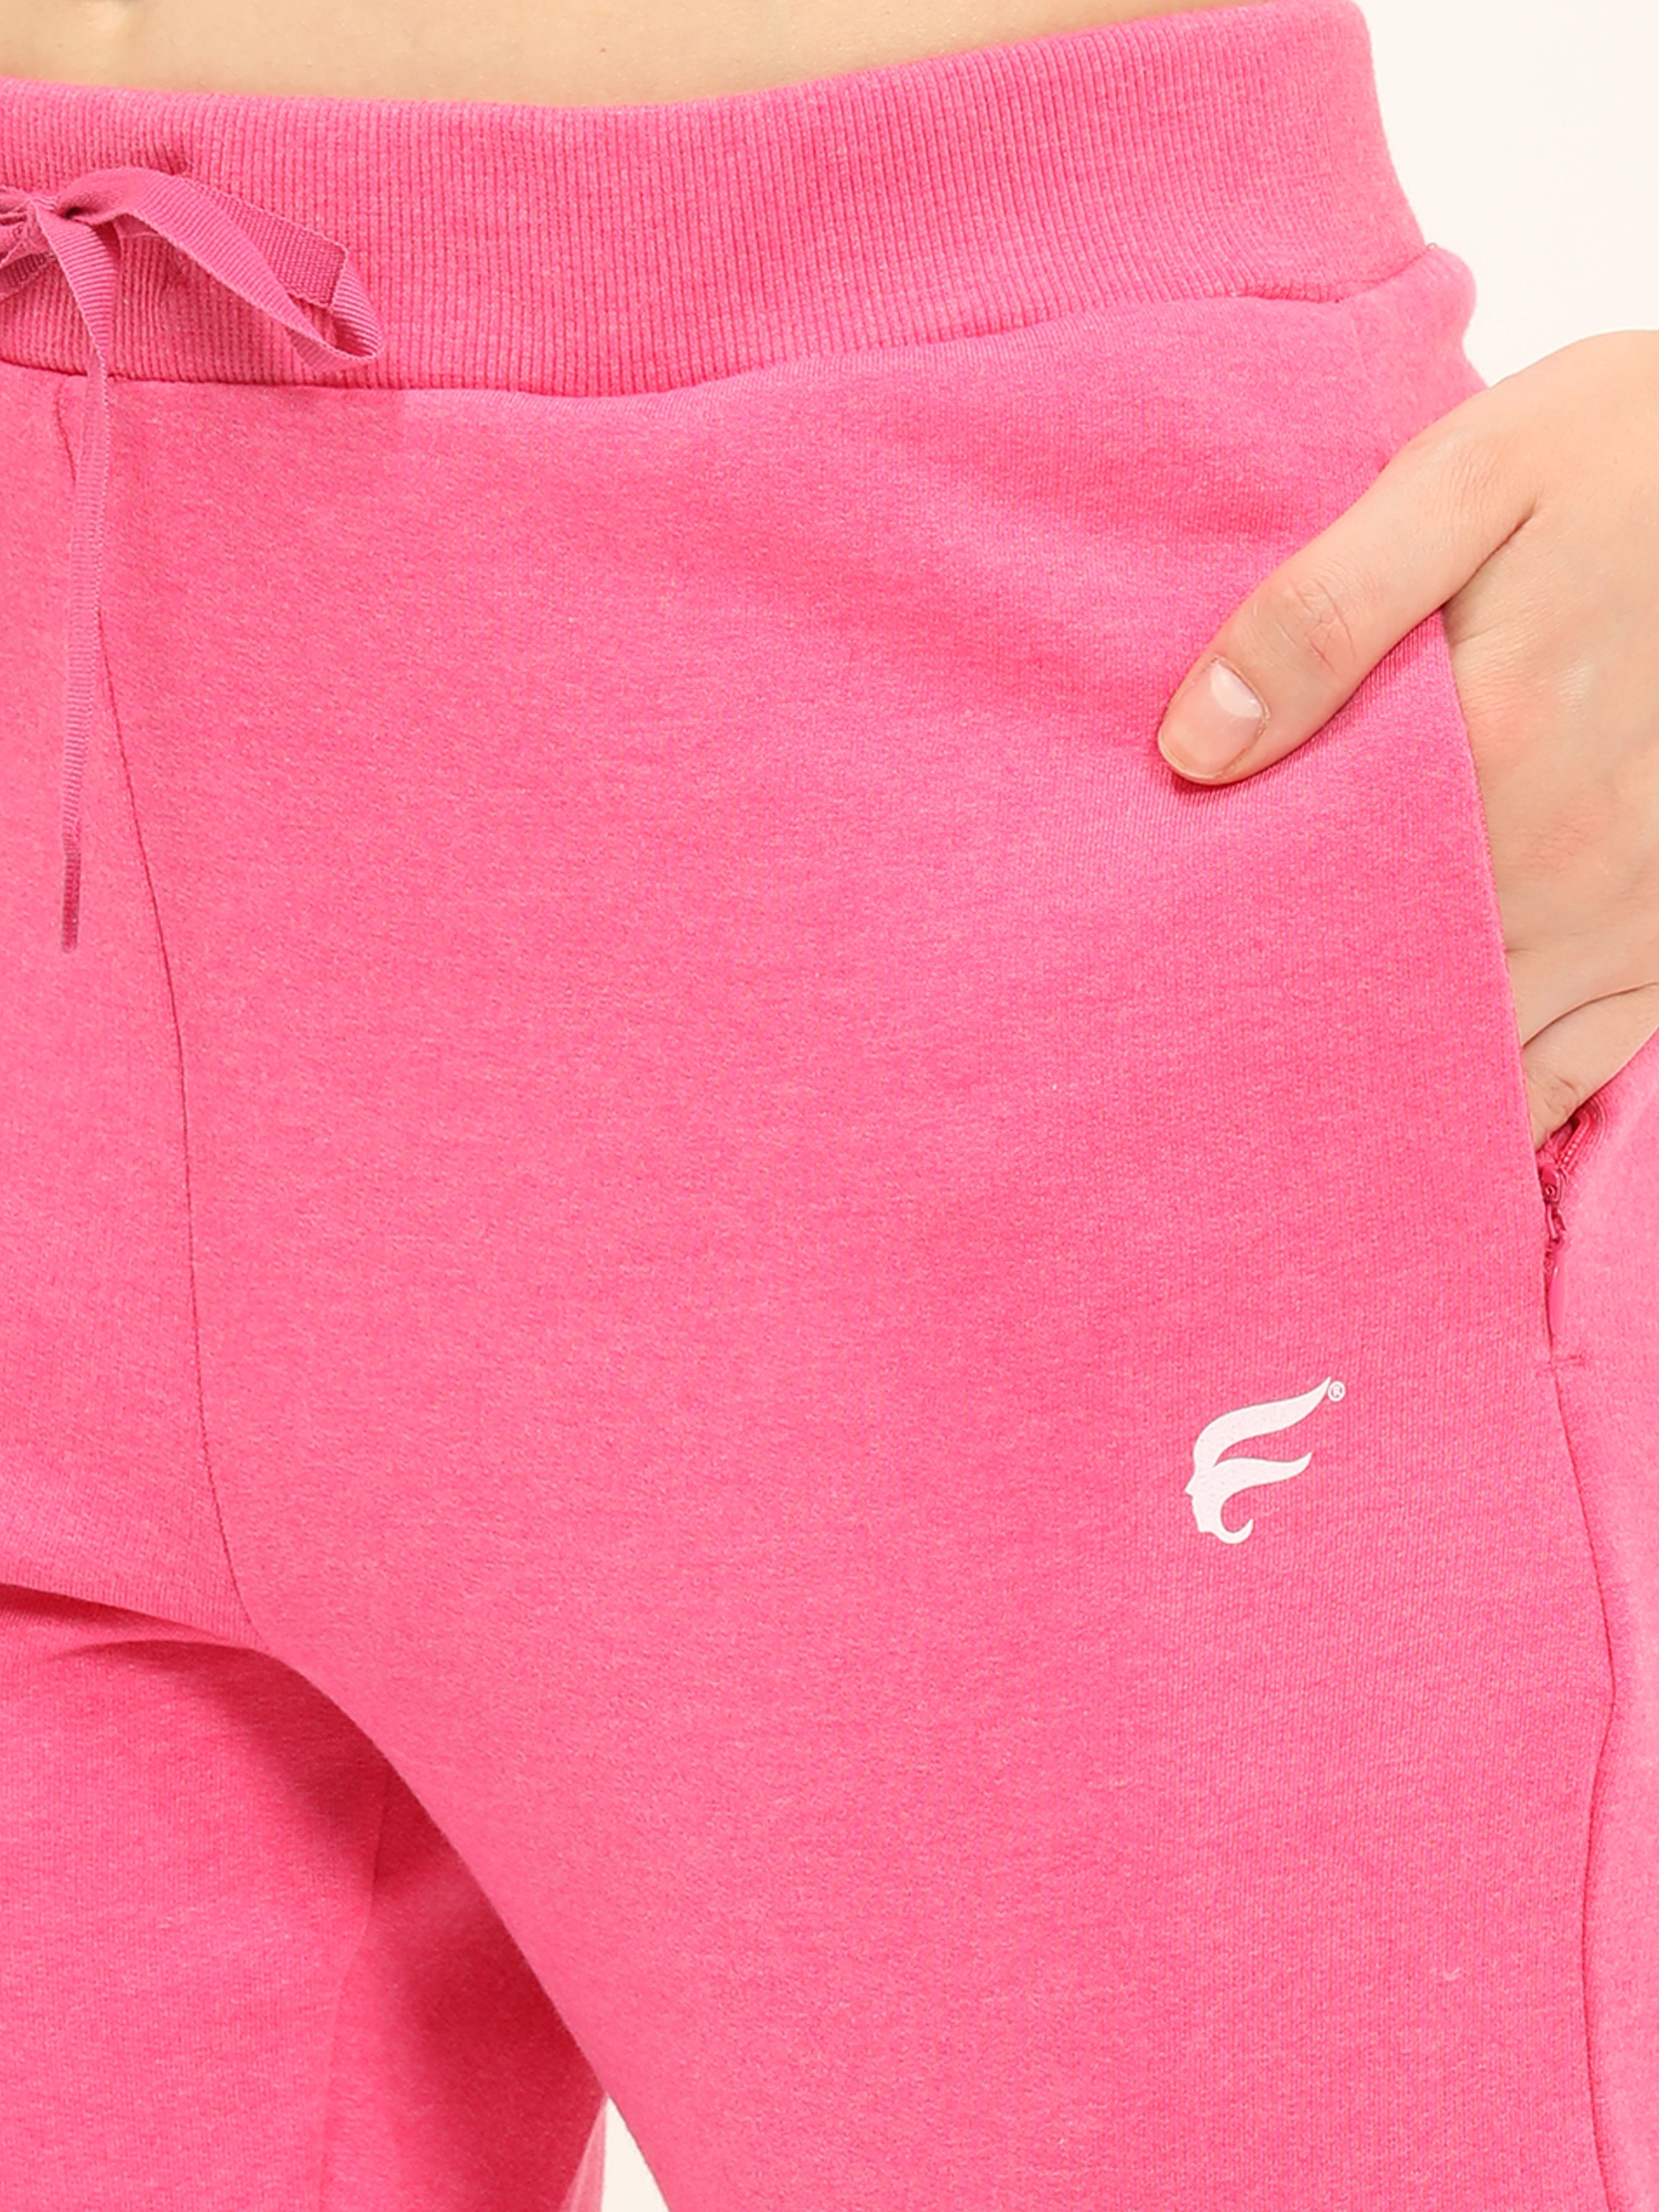 ENVIE Women's Poly Cotton Casual Wear Fleece Sports Track Pants